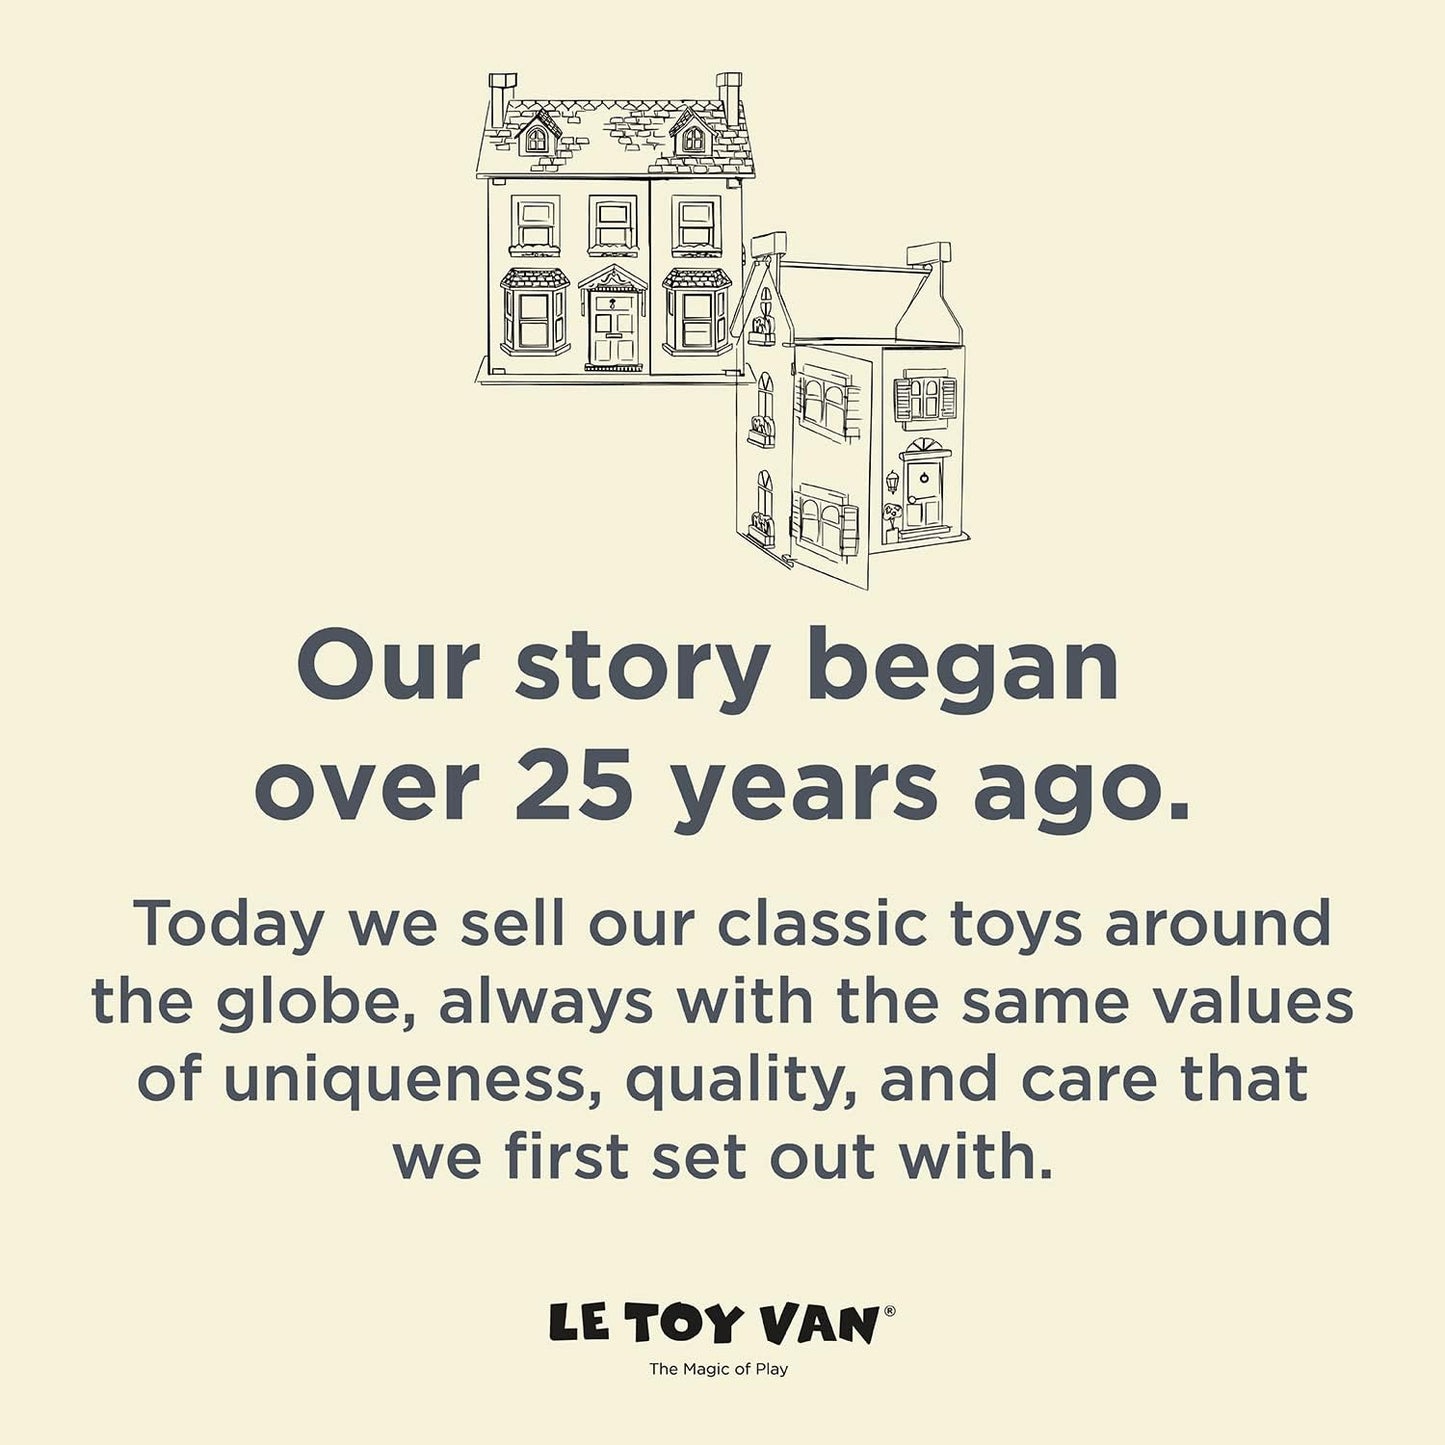 Le Toy Van- Casa de bonecas Mayberry Manor Grande casa de bonecas de madeira | Conjunto de jogos de casa de bonecas de madeira de 3 andares para meninas e meninos - adequado para maiores de 3 anos